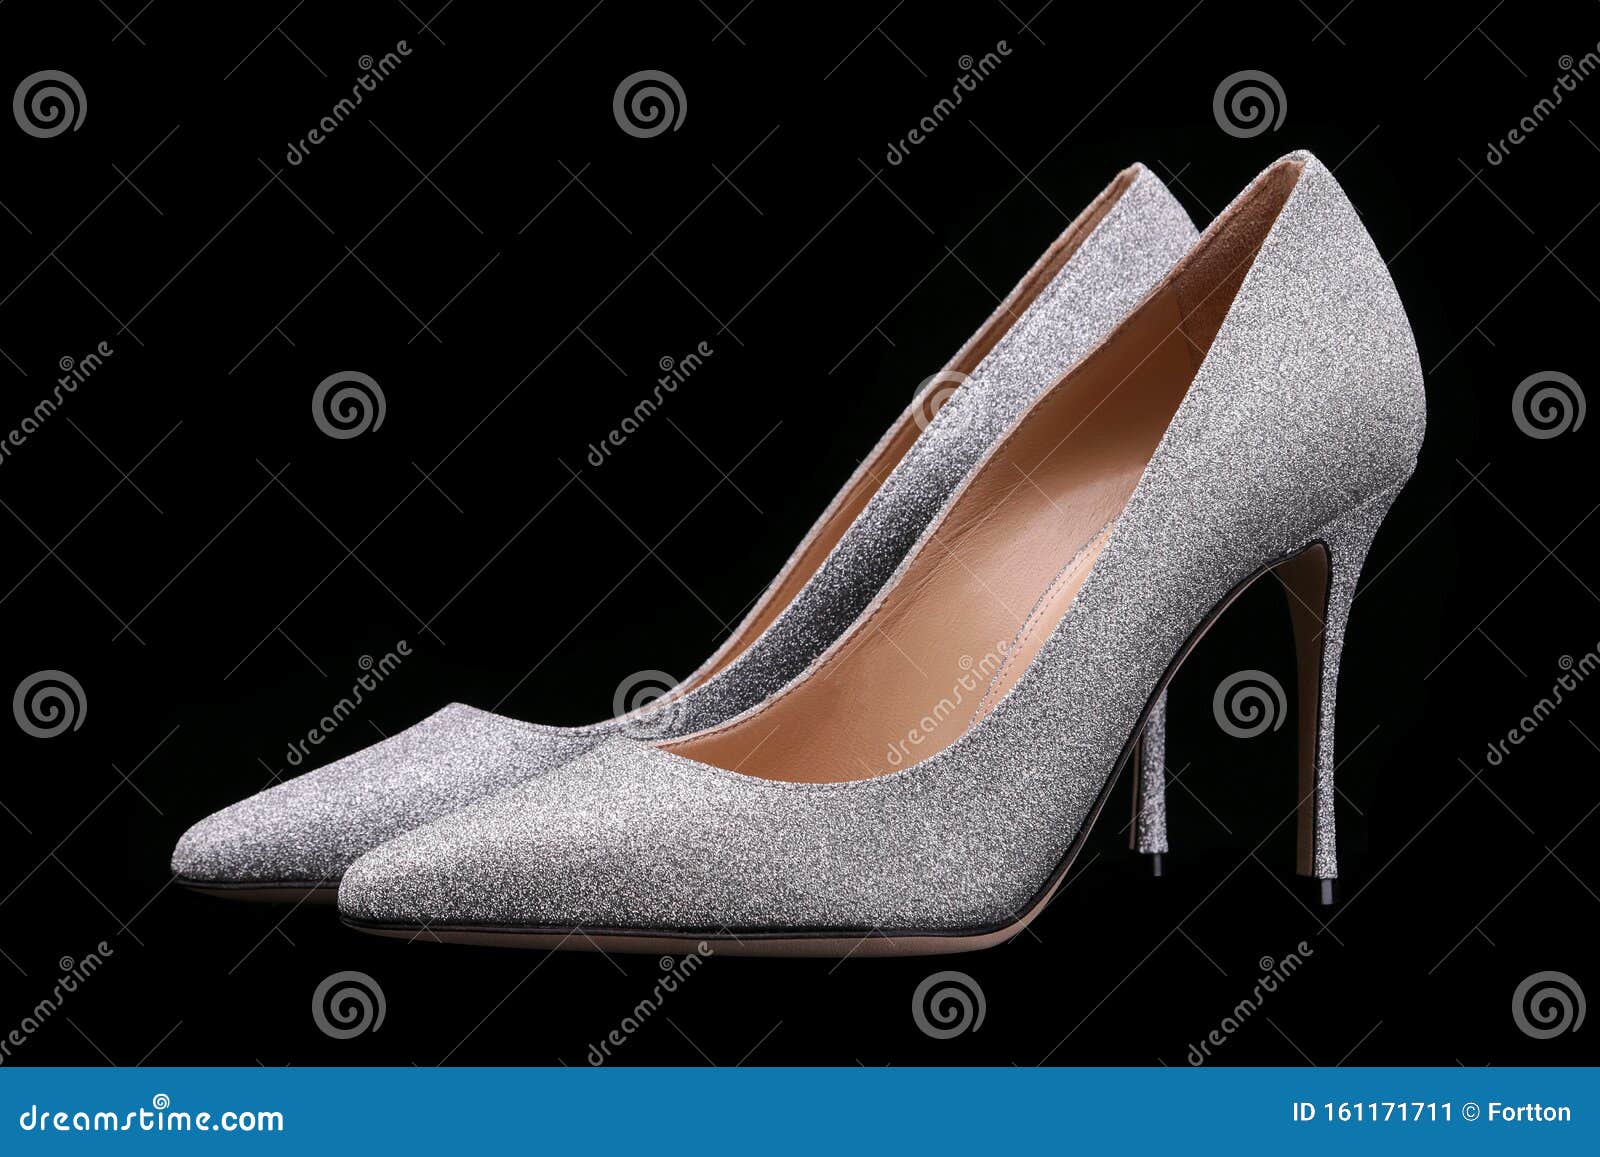 Zapatos Brillantes De Alto Nivel Con Un Dedo Gordo Imagen de archivo - Imagen color: 161171711